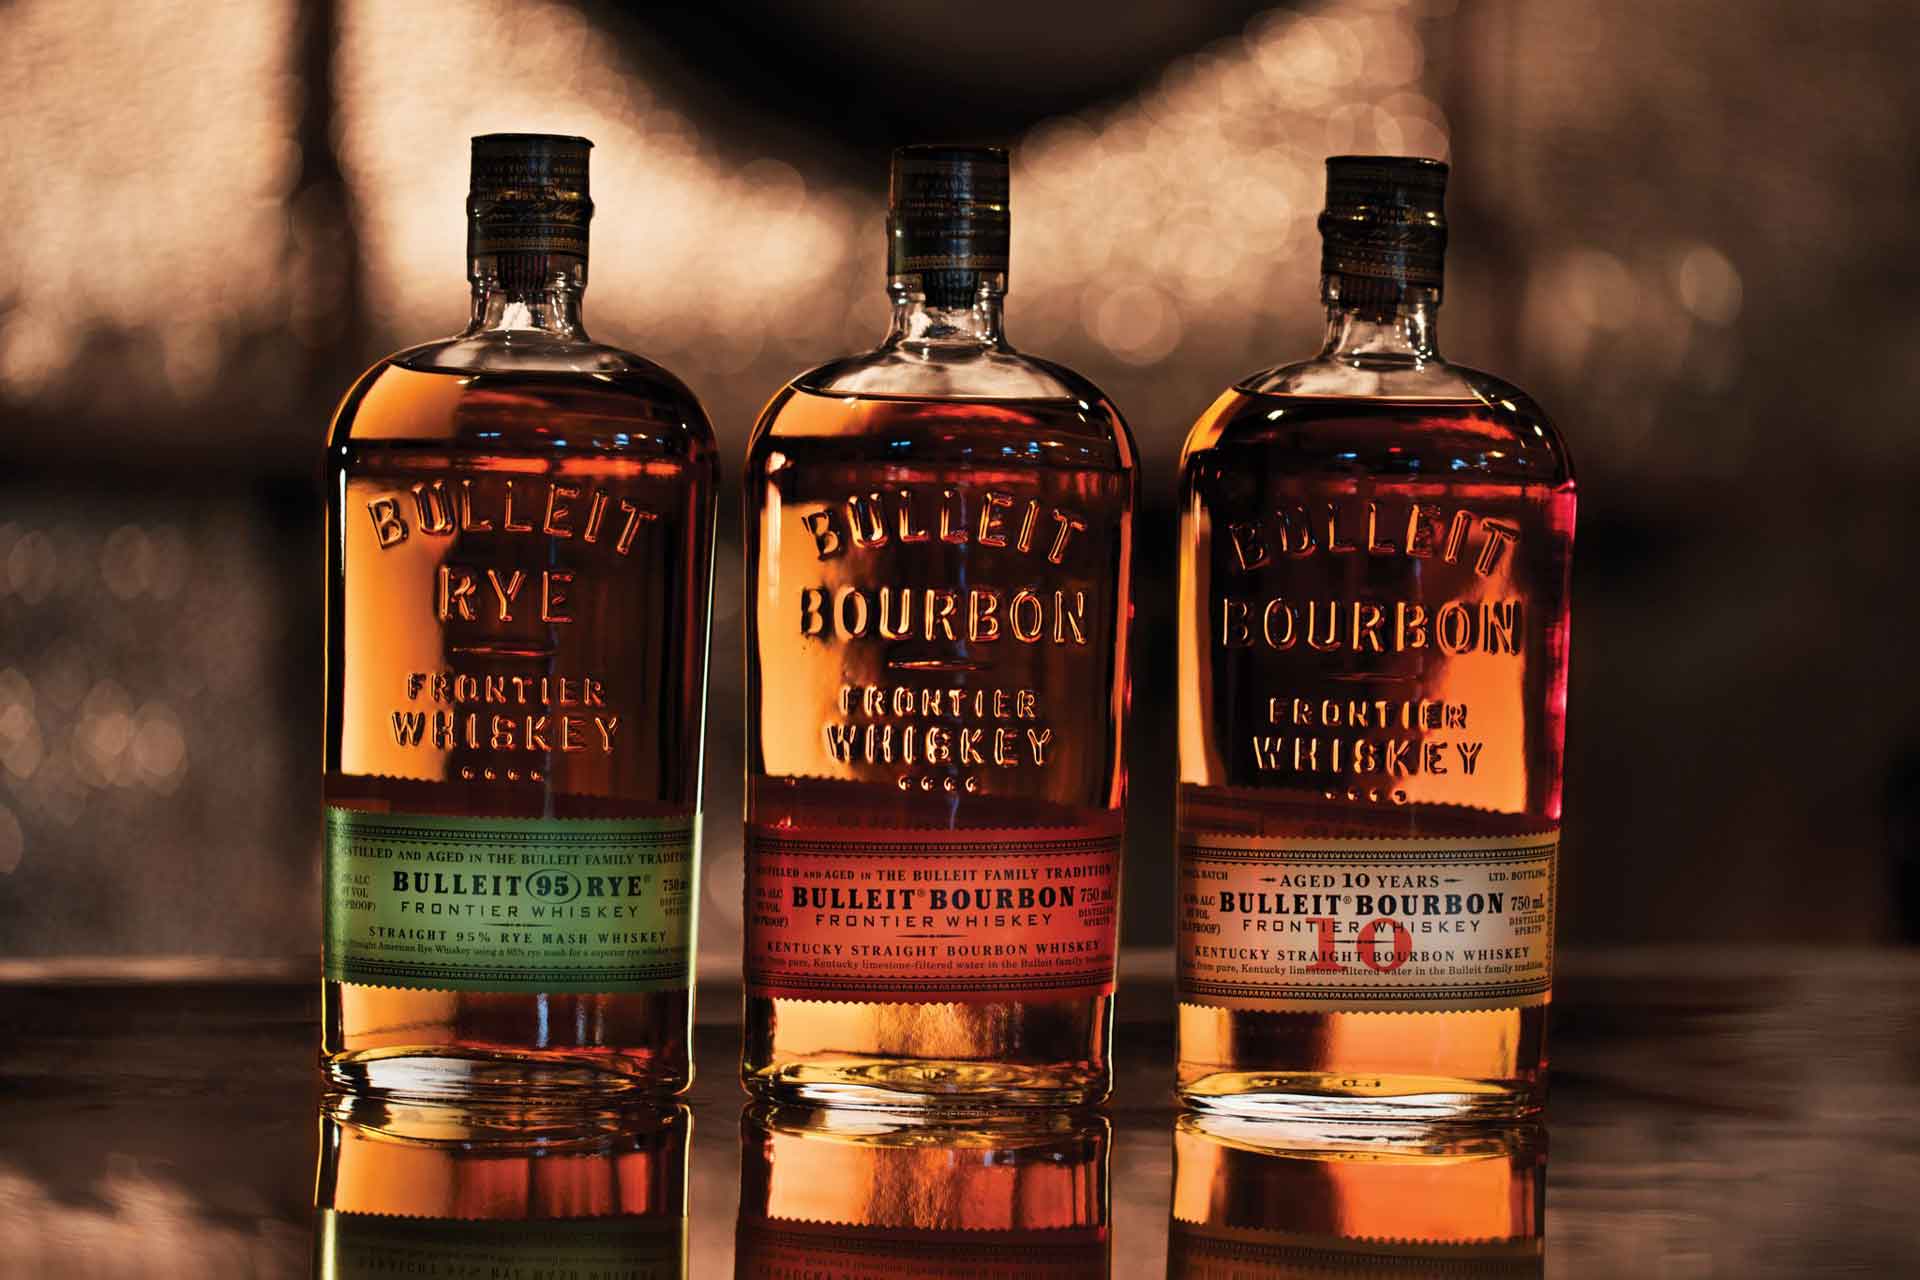 https://blog.kysupplyco.com/wp-content/uploads/2021/12/Bulleit-Bourbon-Gift-Set-Bourbon-Rye-10-Year.jpg